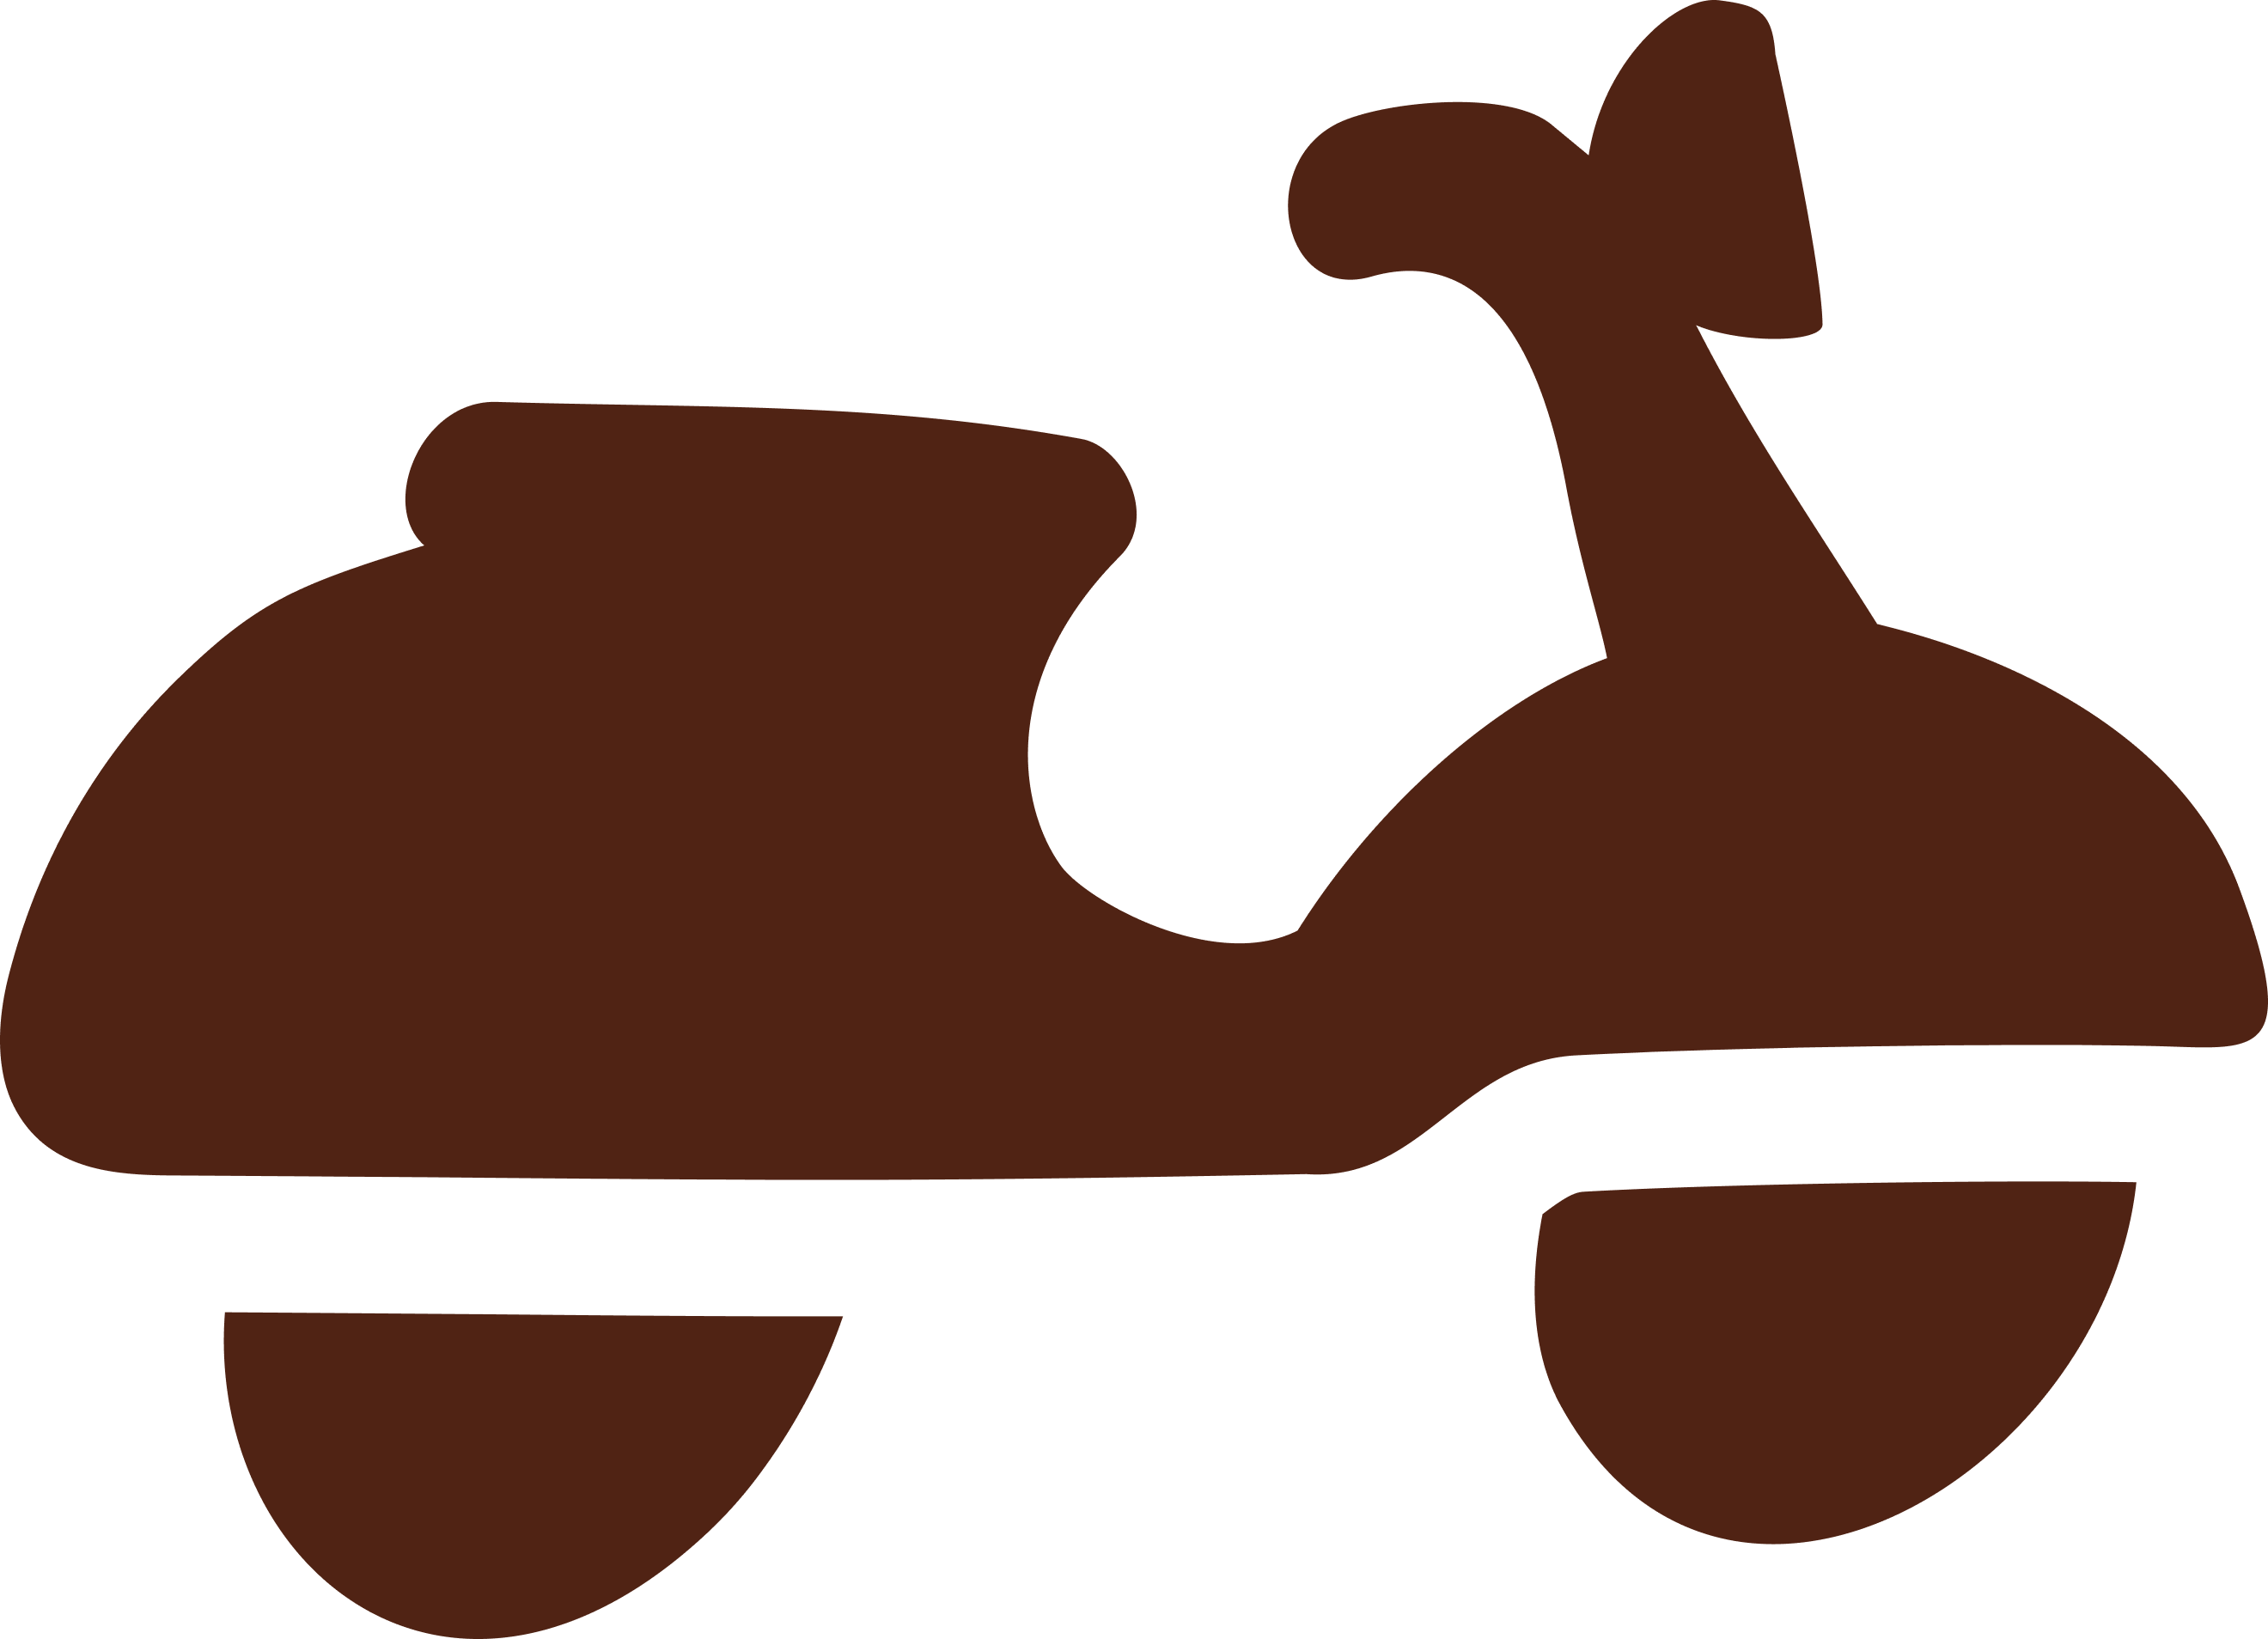 Ícone do Burger King Delivery, ilustração de uma moto do estilo da Vespa